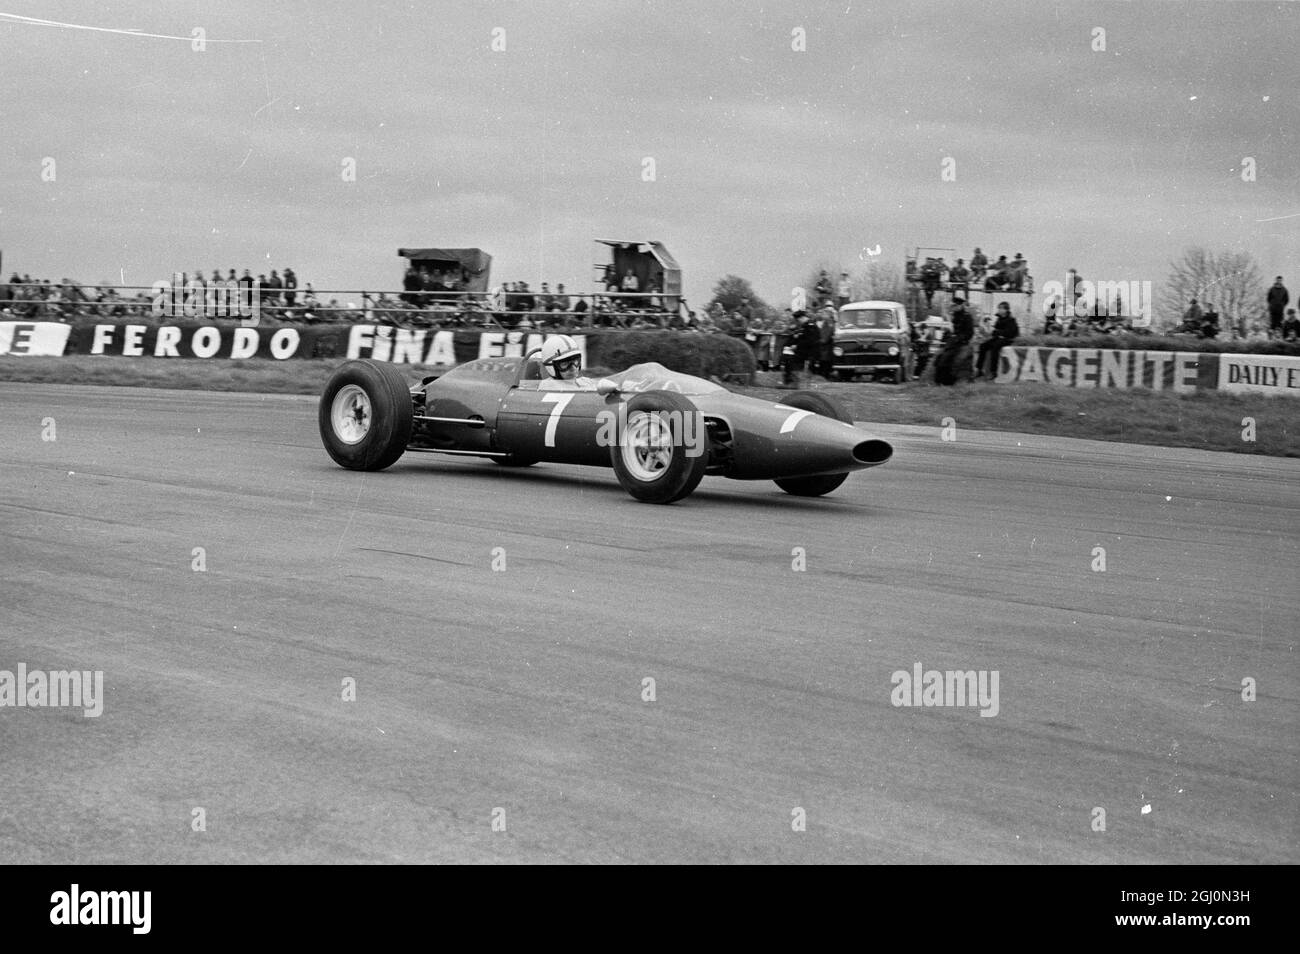 John Surtees en Grande-Bretagne pilotant sa Ferrari en Formule 1 29 janvier 1965 Banque D'Images